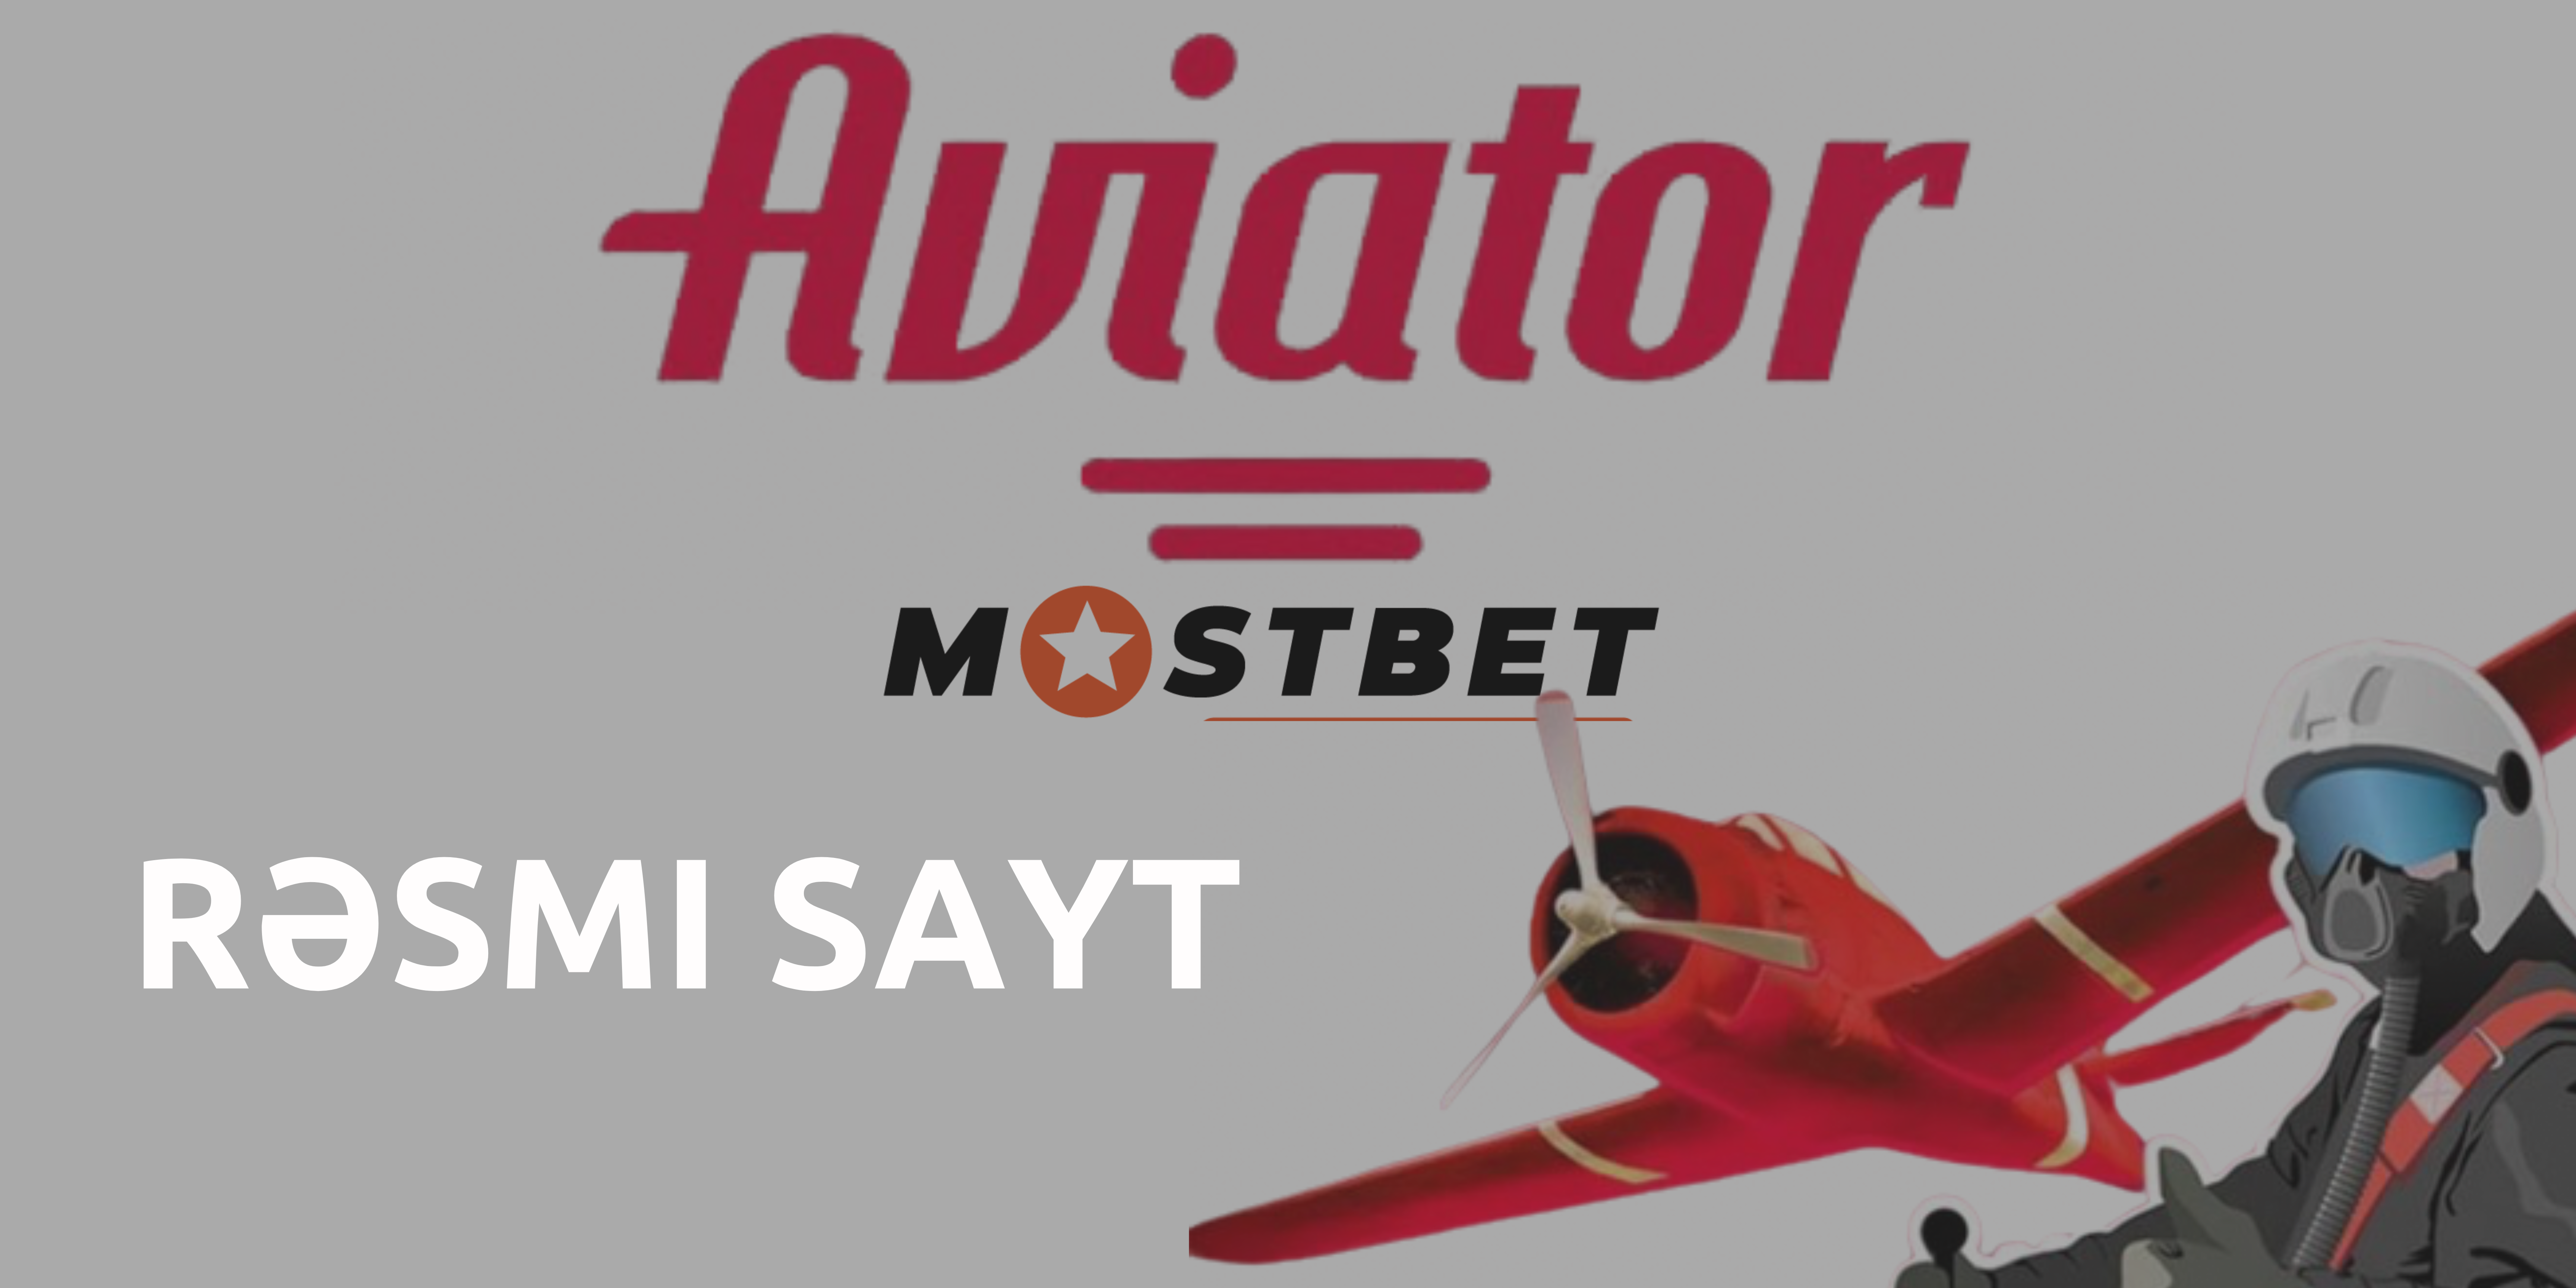 Mostbet aviator rəsmi saytı